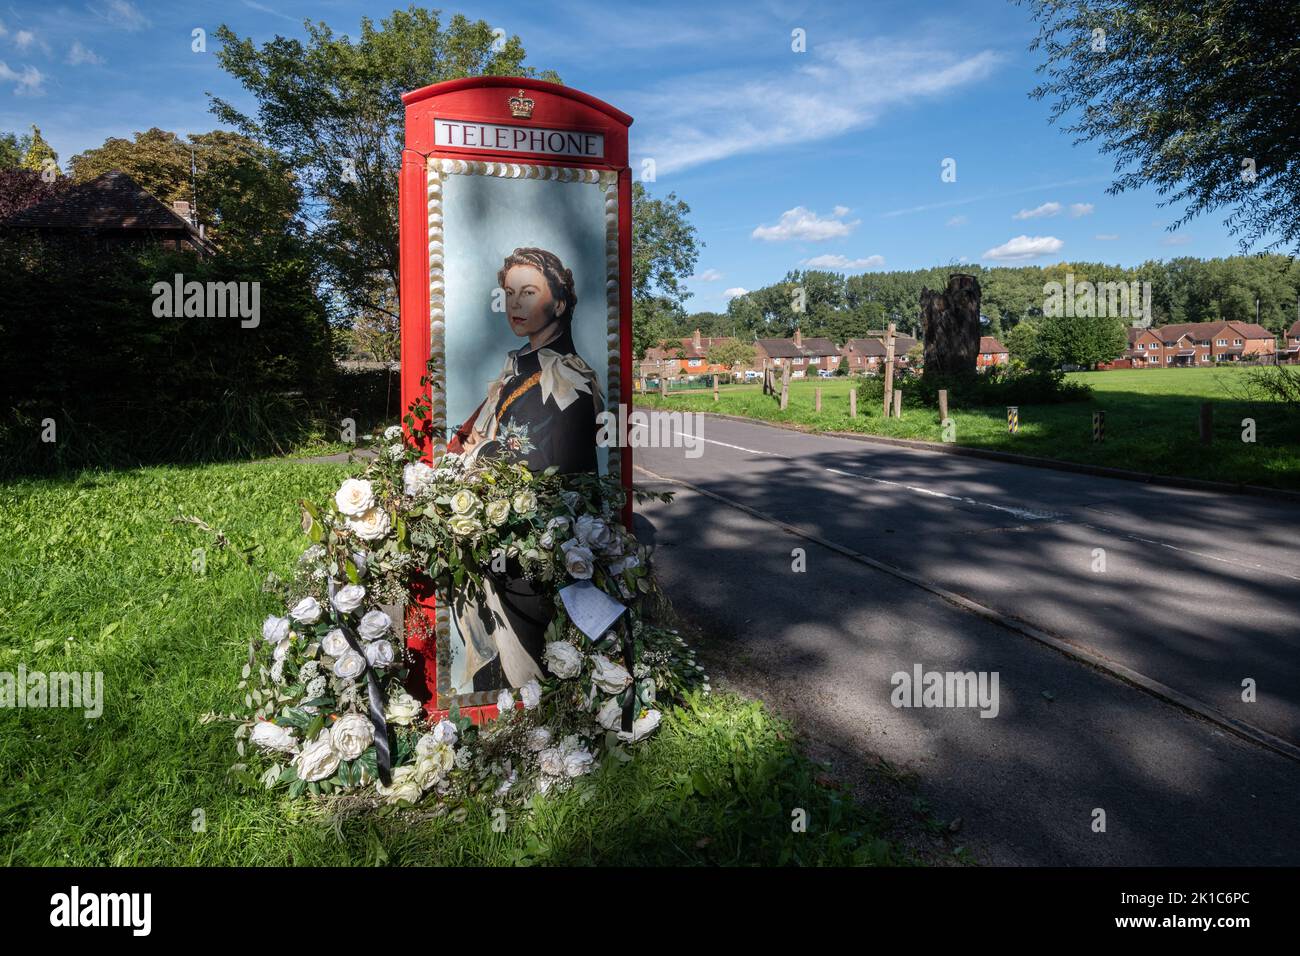 Scatola telefonica rossa decorata per onorare la regina Elisabetta II dopo la sua morte nel settembre 2022 nel villaggio Surrey di Compton, Inghilterra, Regno Unito Foto Stock